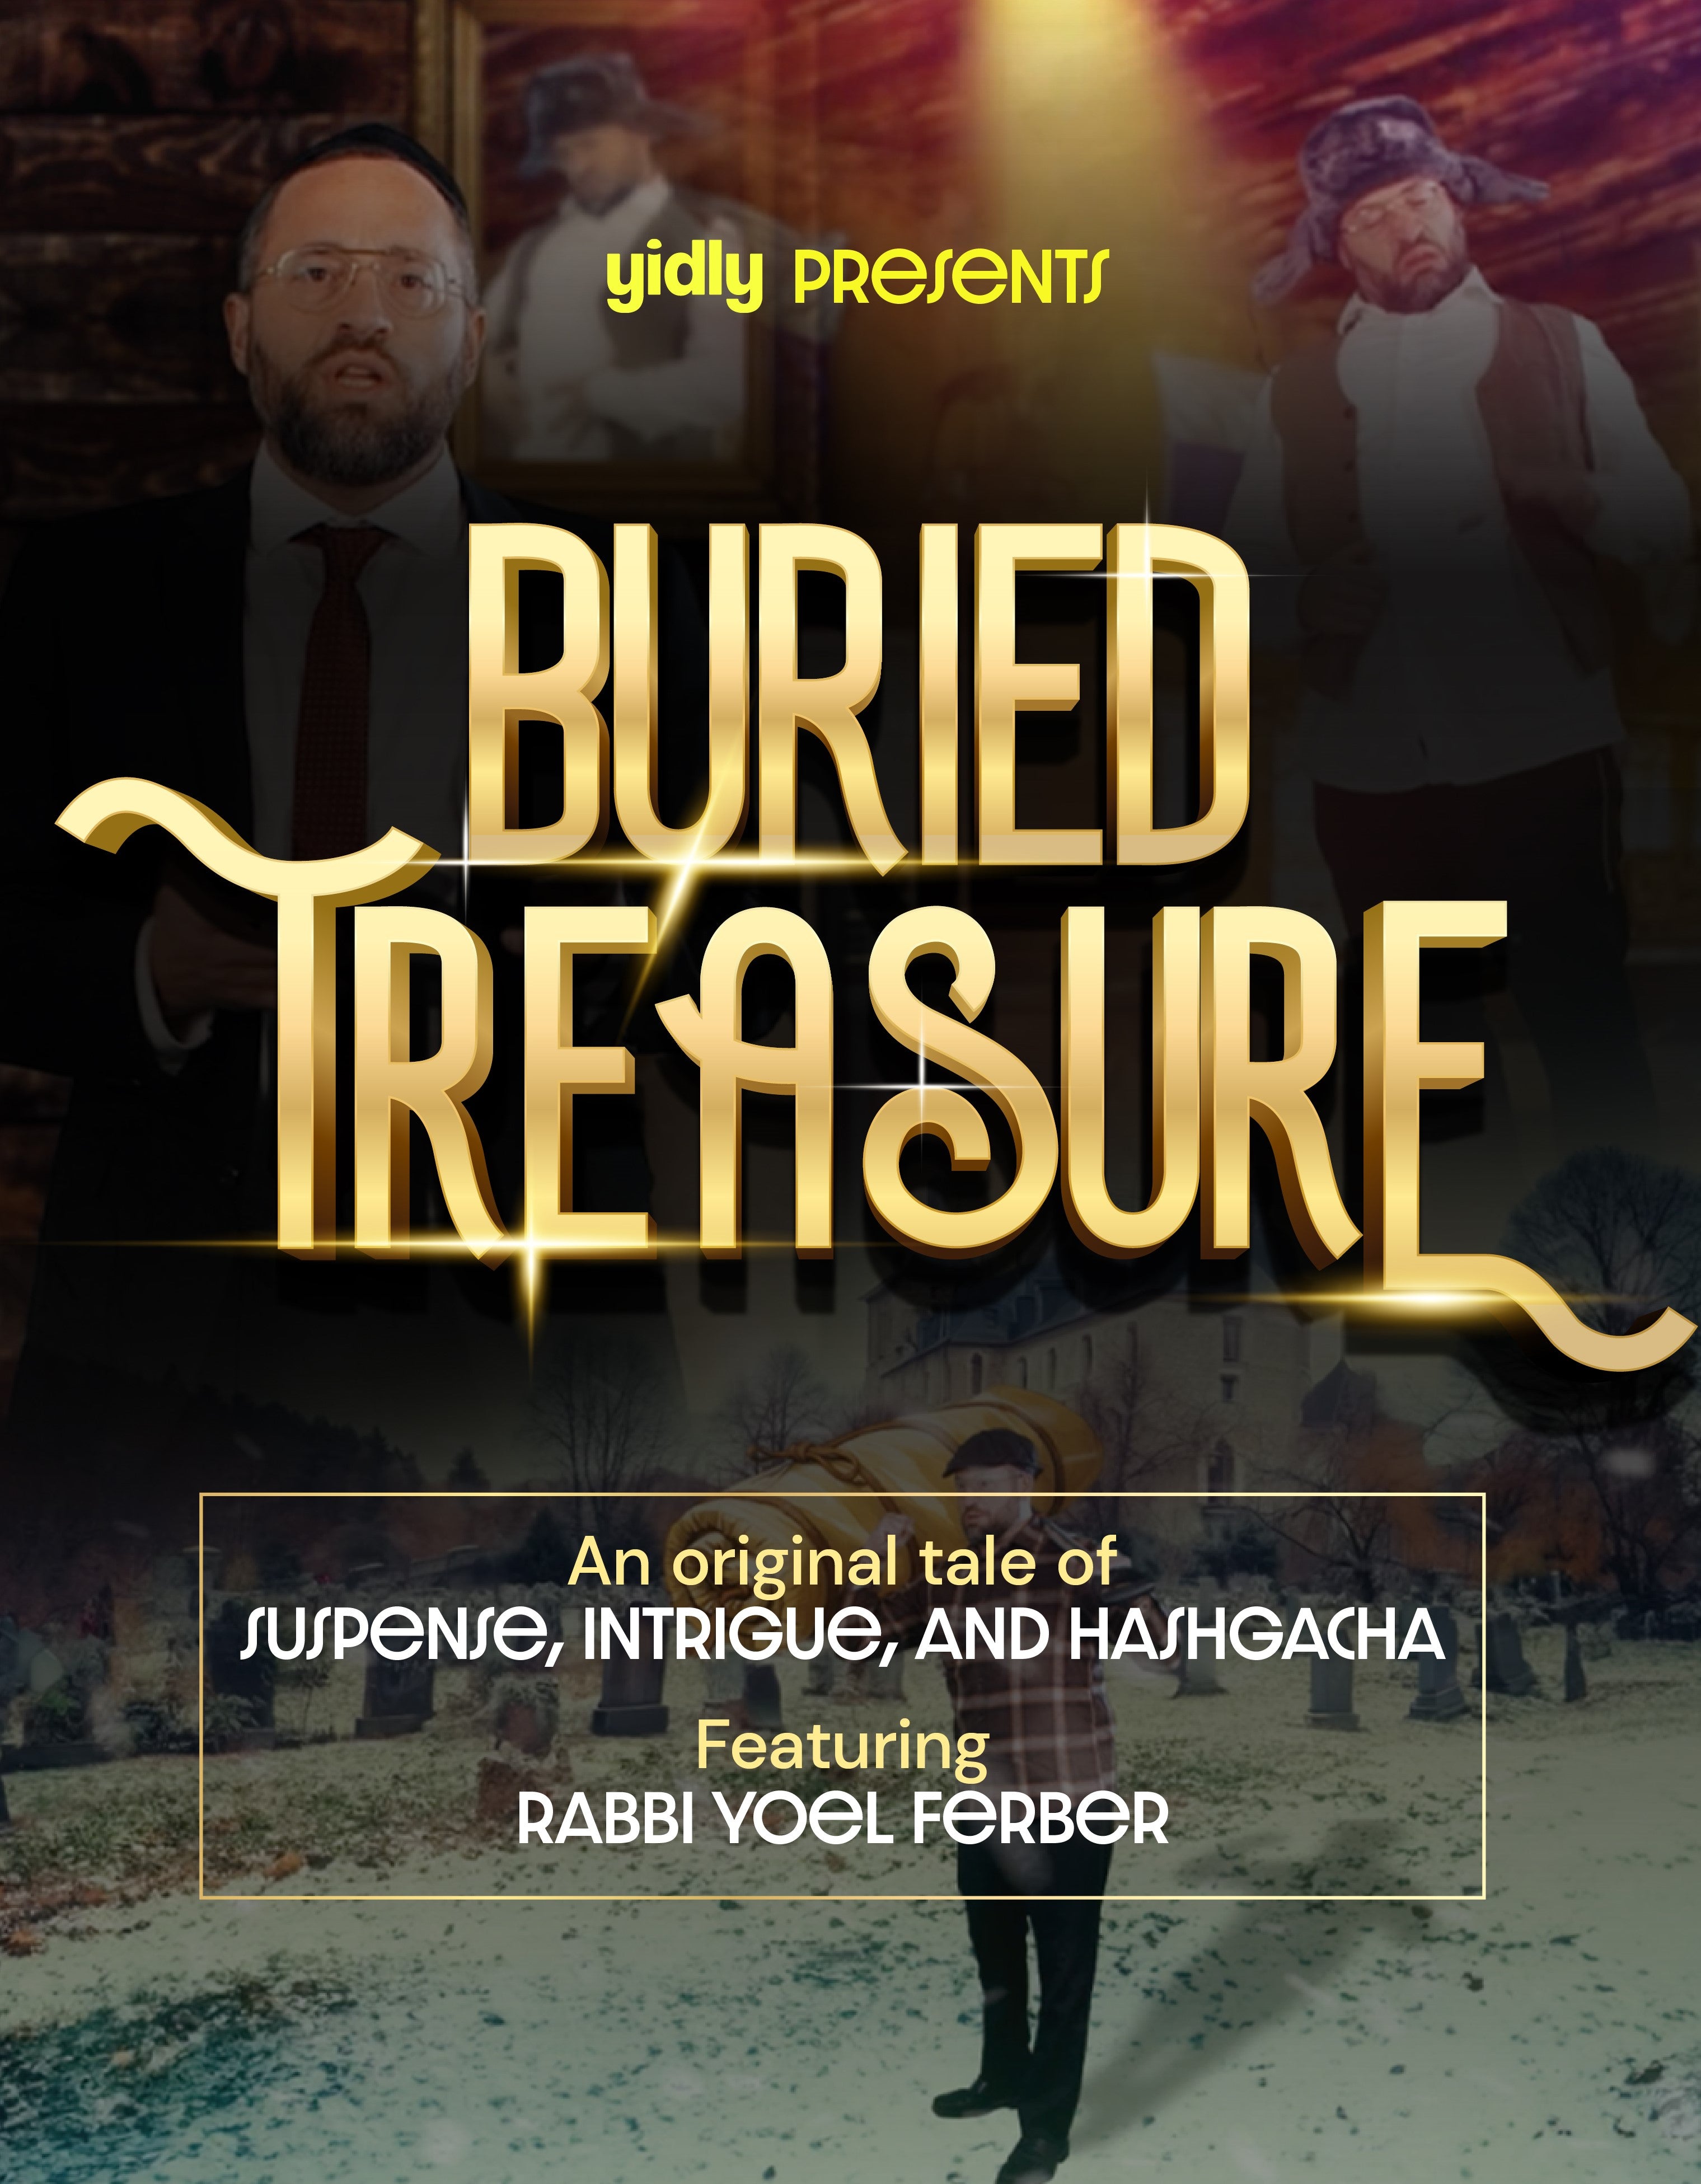 Rabbi Yoel Ferber - Buried Treasure (Video)